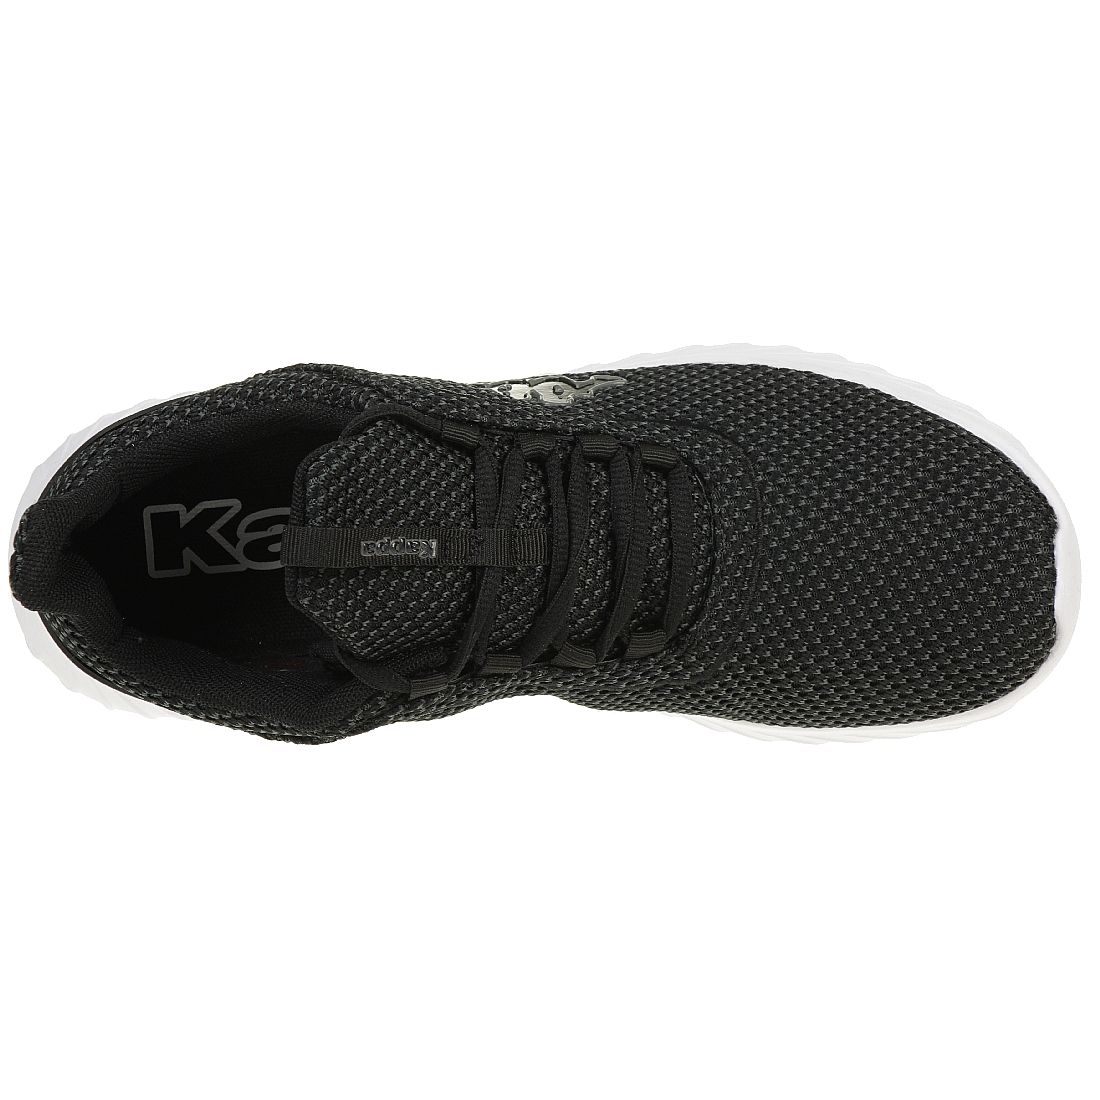 Kappa Sneaker Unisex Turnschuhe Schuhe schwarz/weiss 242684